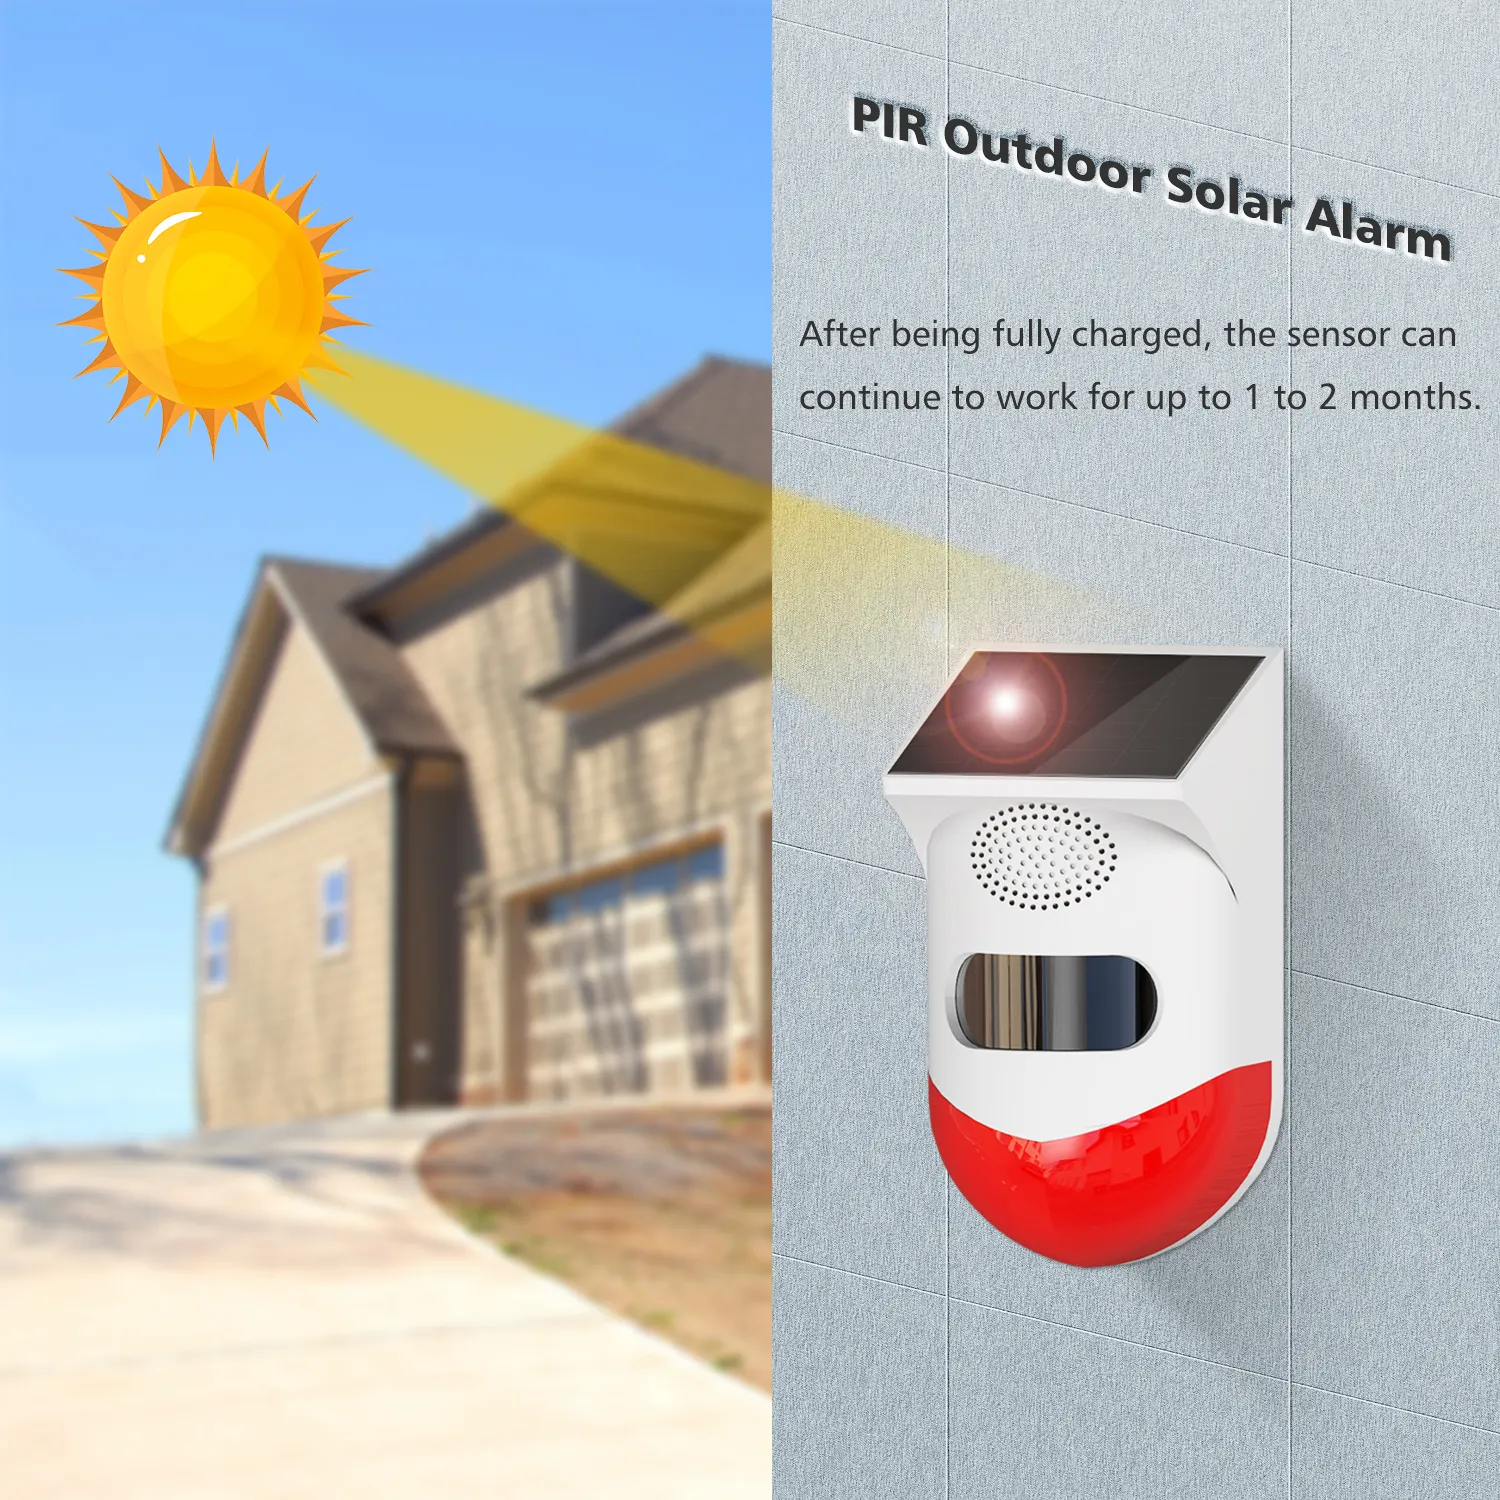 Alarme de segurança residencial, sirene com sensor de movimento infravermelho alimentado por luz solar alarme de sensor de movimento pir ao ar livre com som e luz